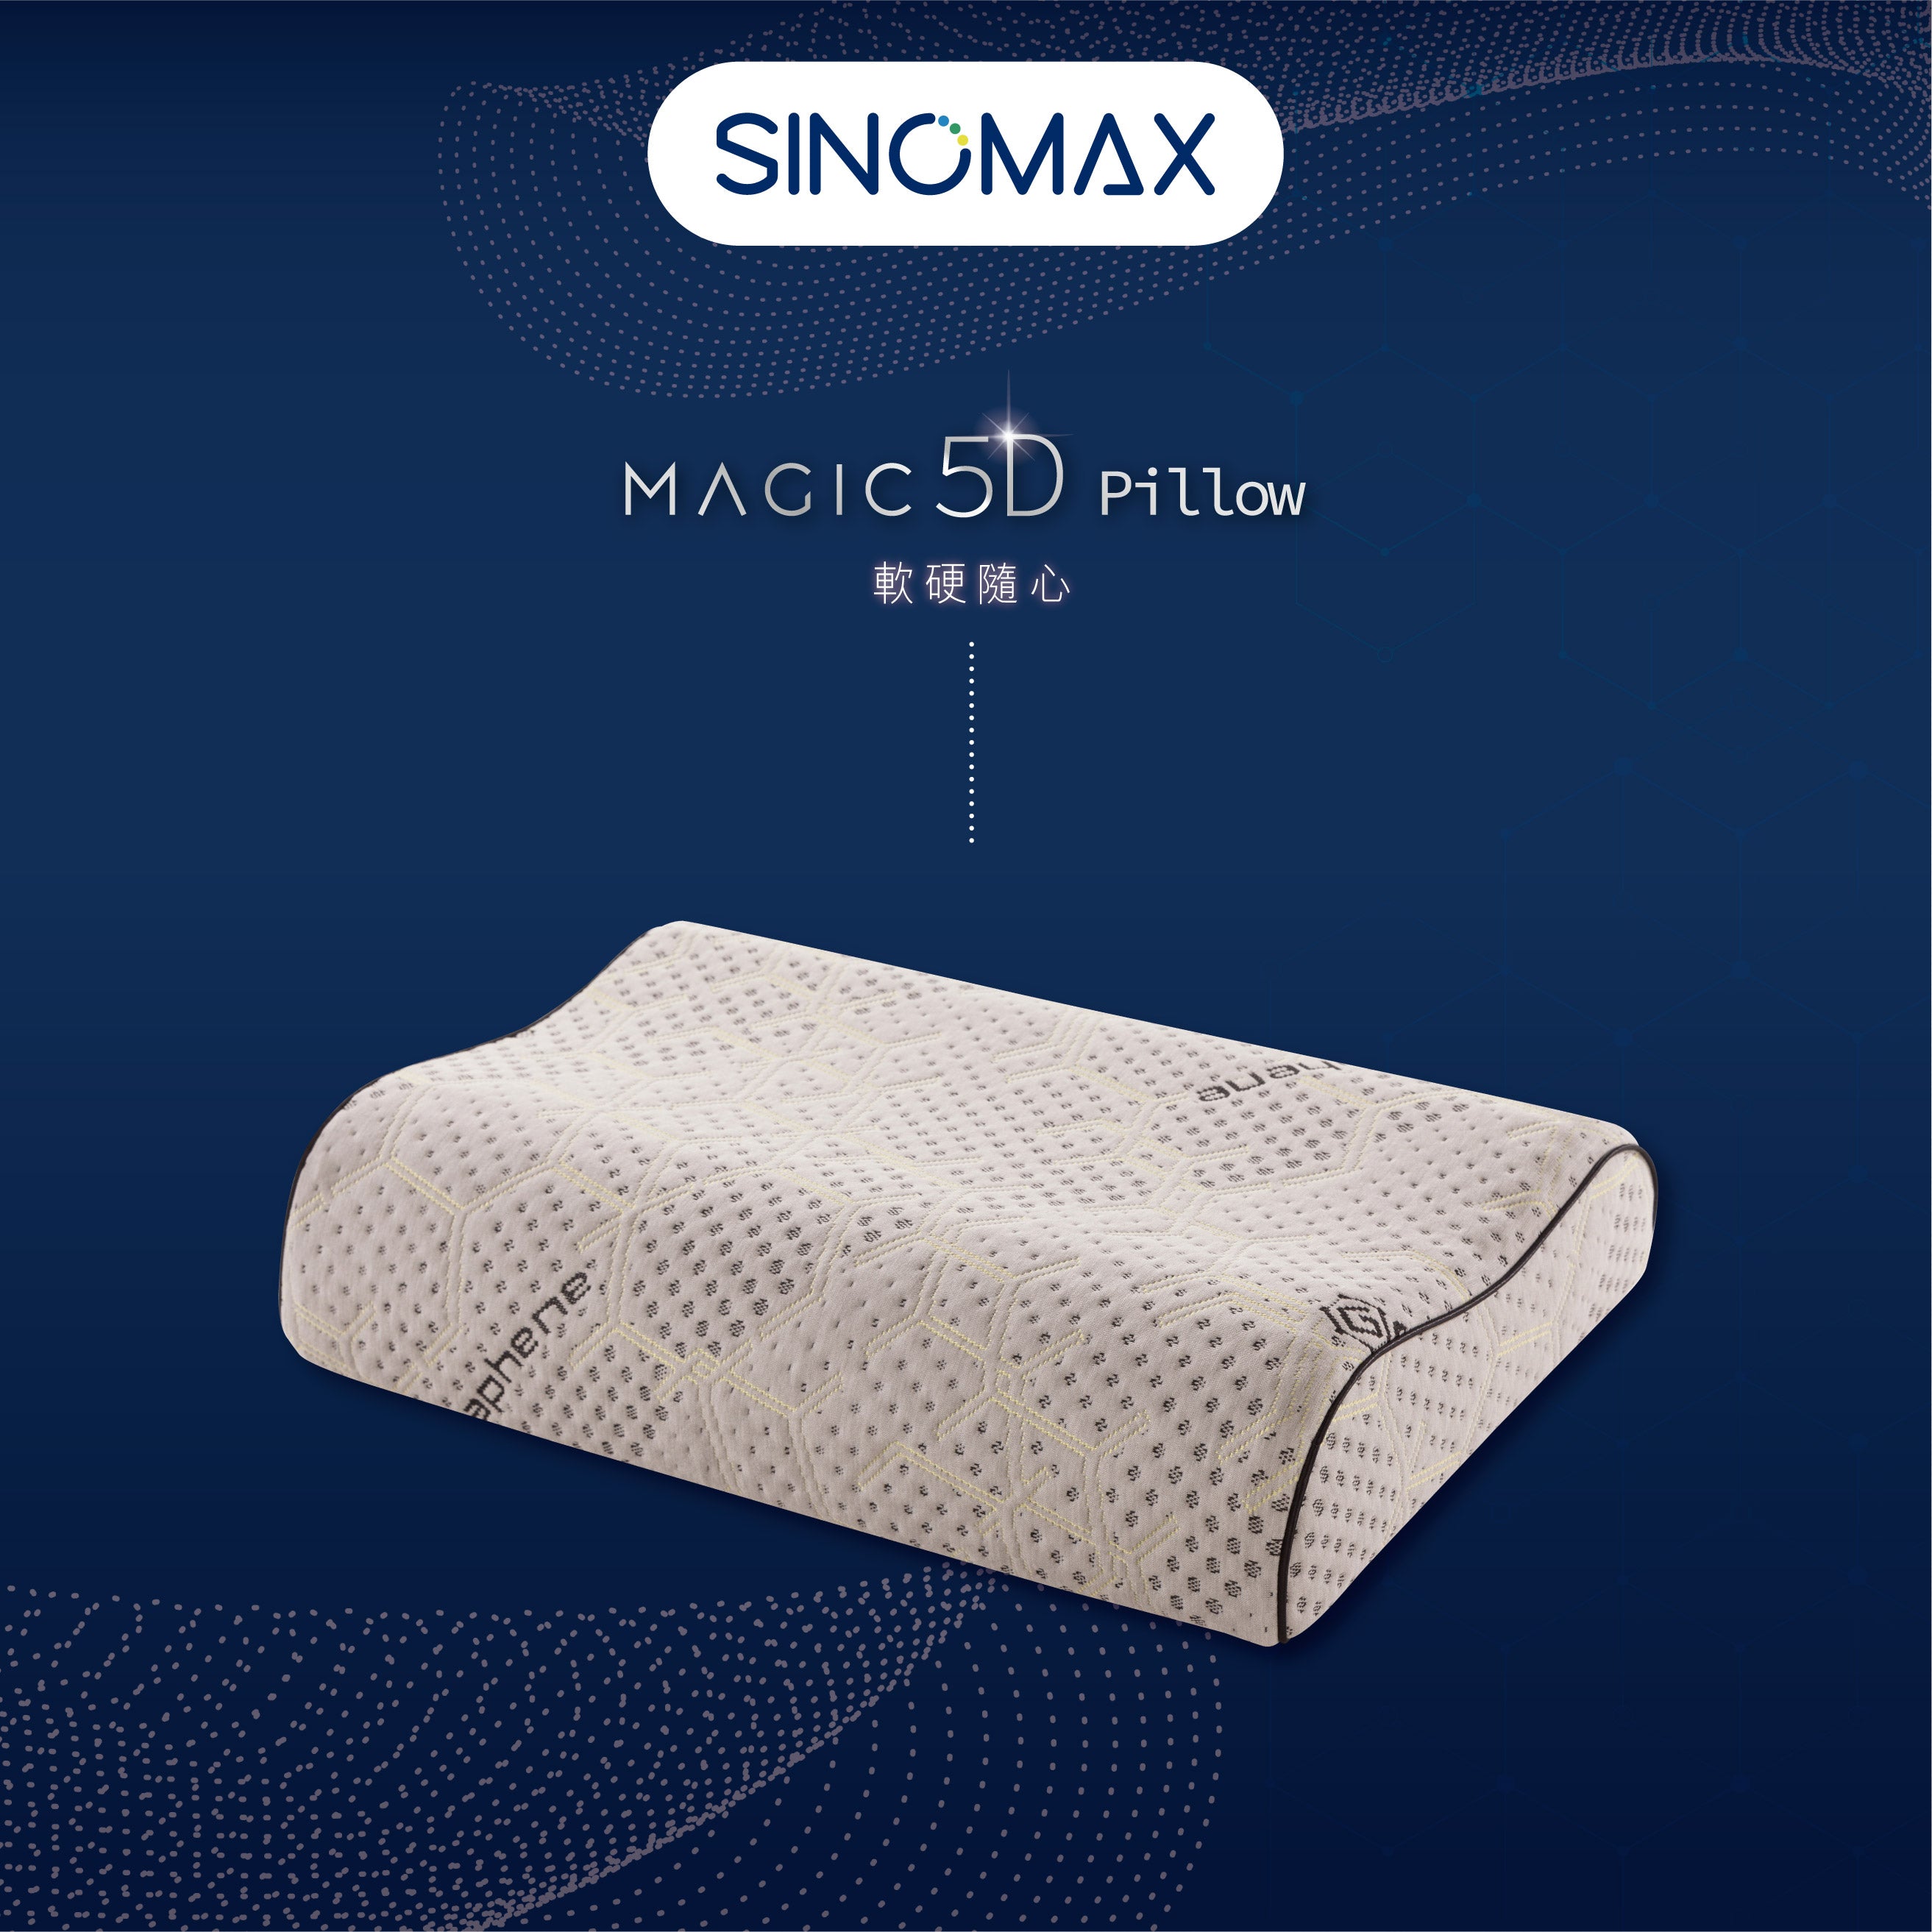 Magic 5D Pillow